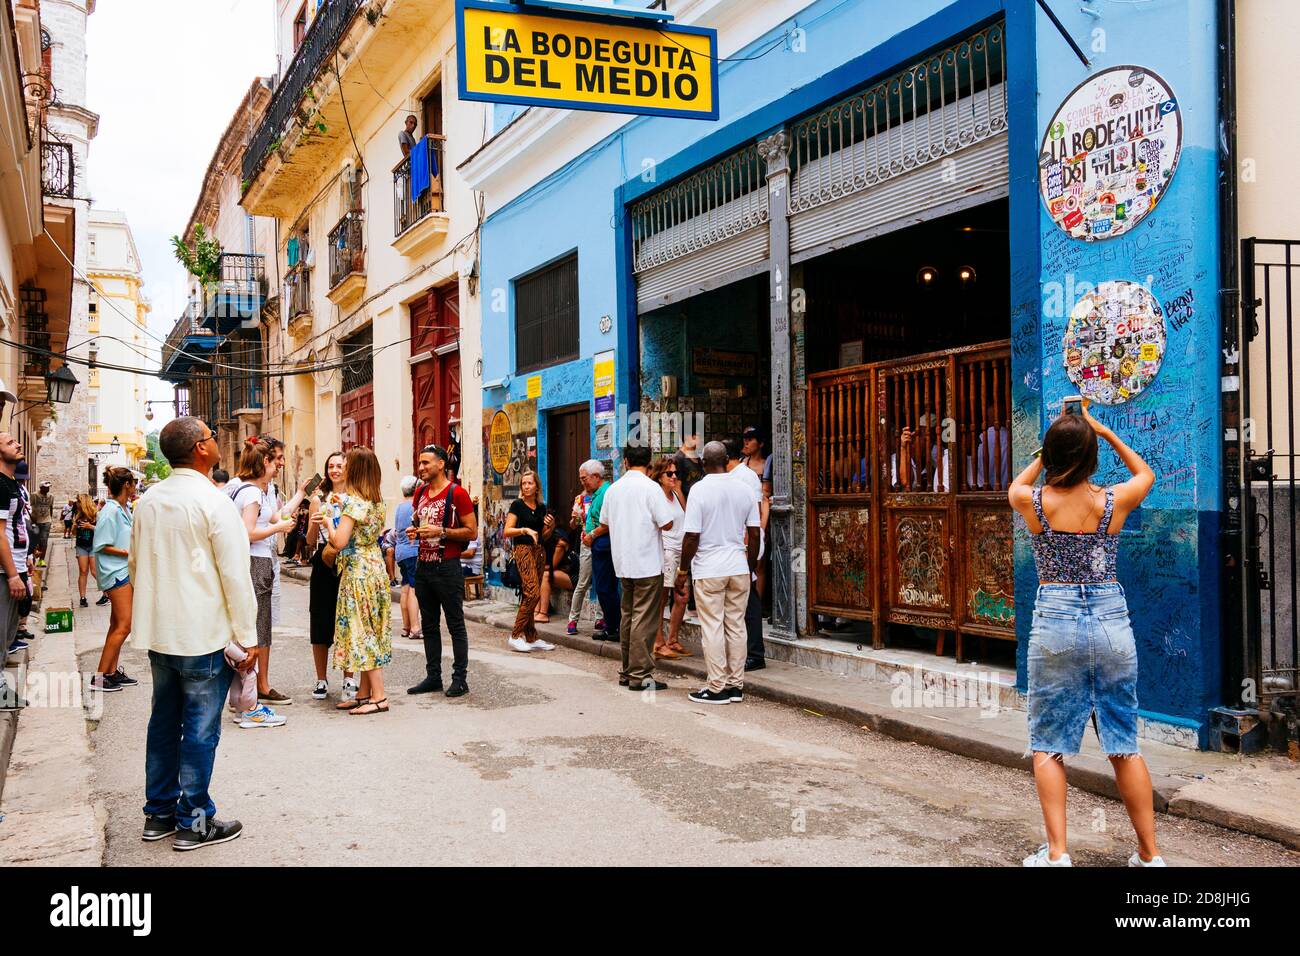 Empedrado Street. La Bodeguita del Medio ist ein typisches Havanna-Restaurant in Kuba, und einer der großen touristischen Orte in der Stadt, wo viele Besucher Stockfoto